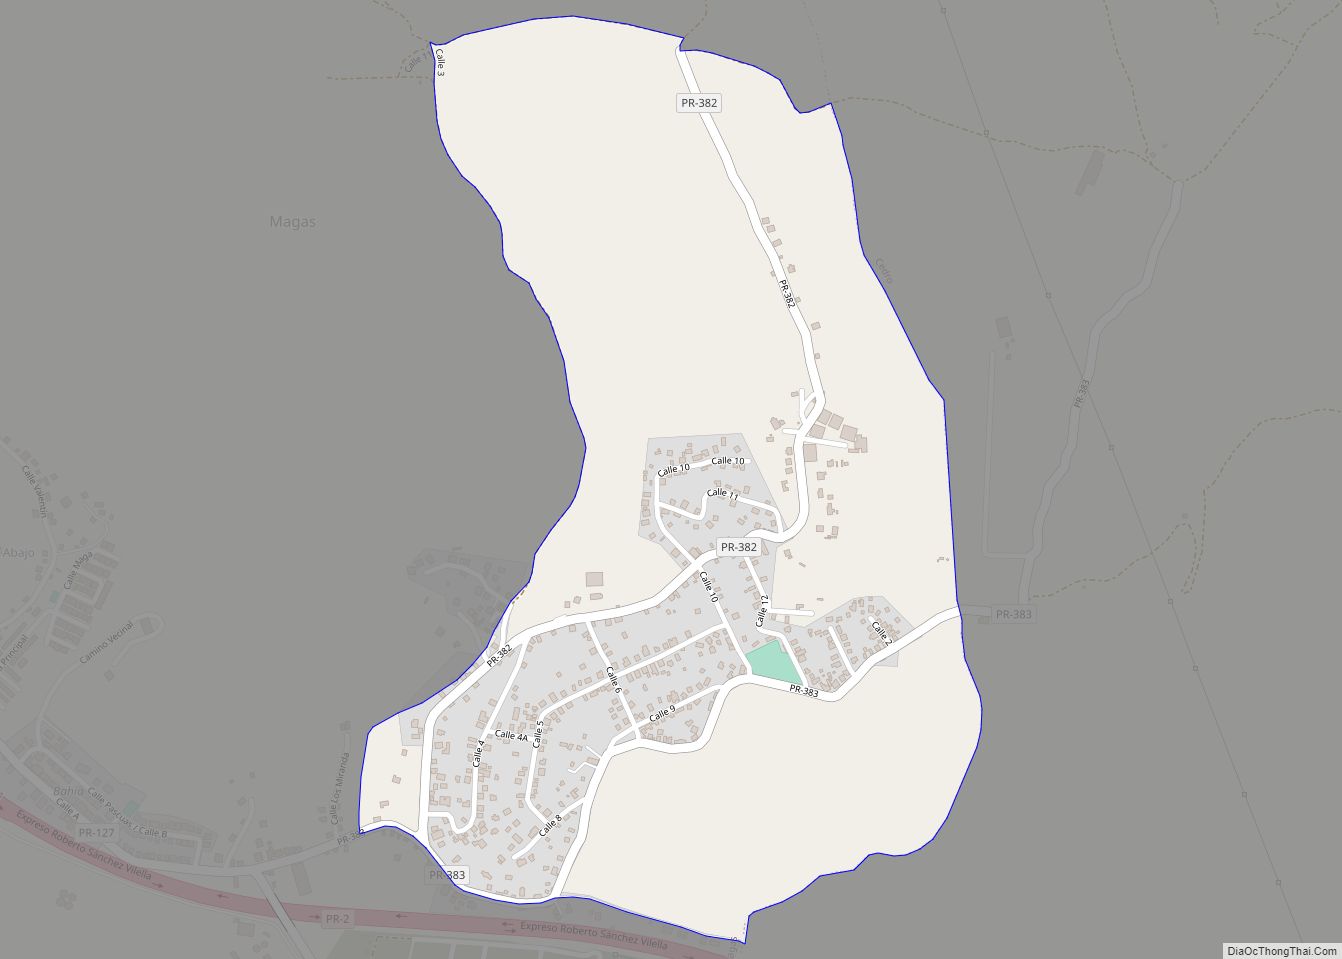 Map of Magas Arriba comunidad